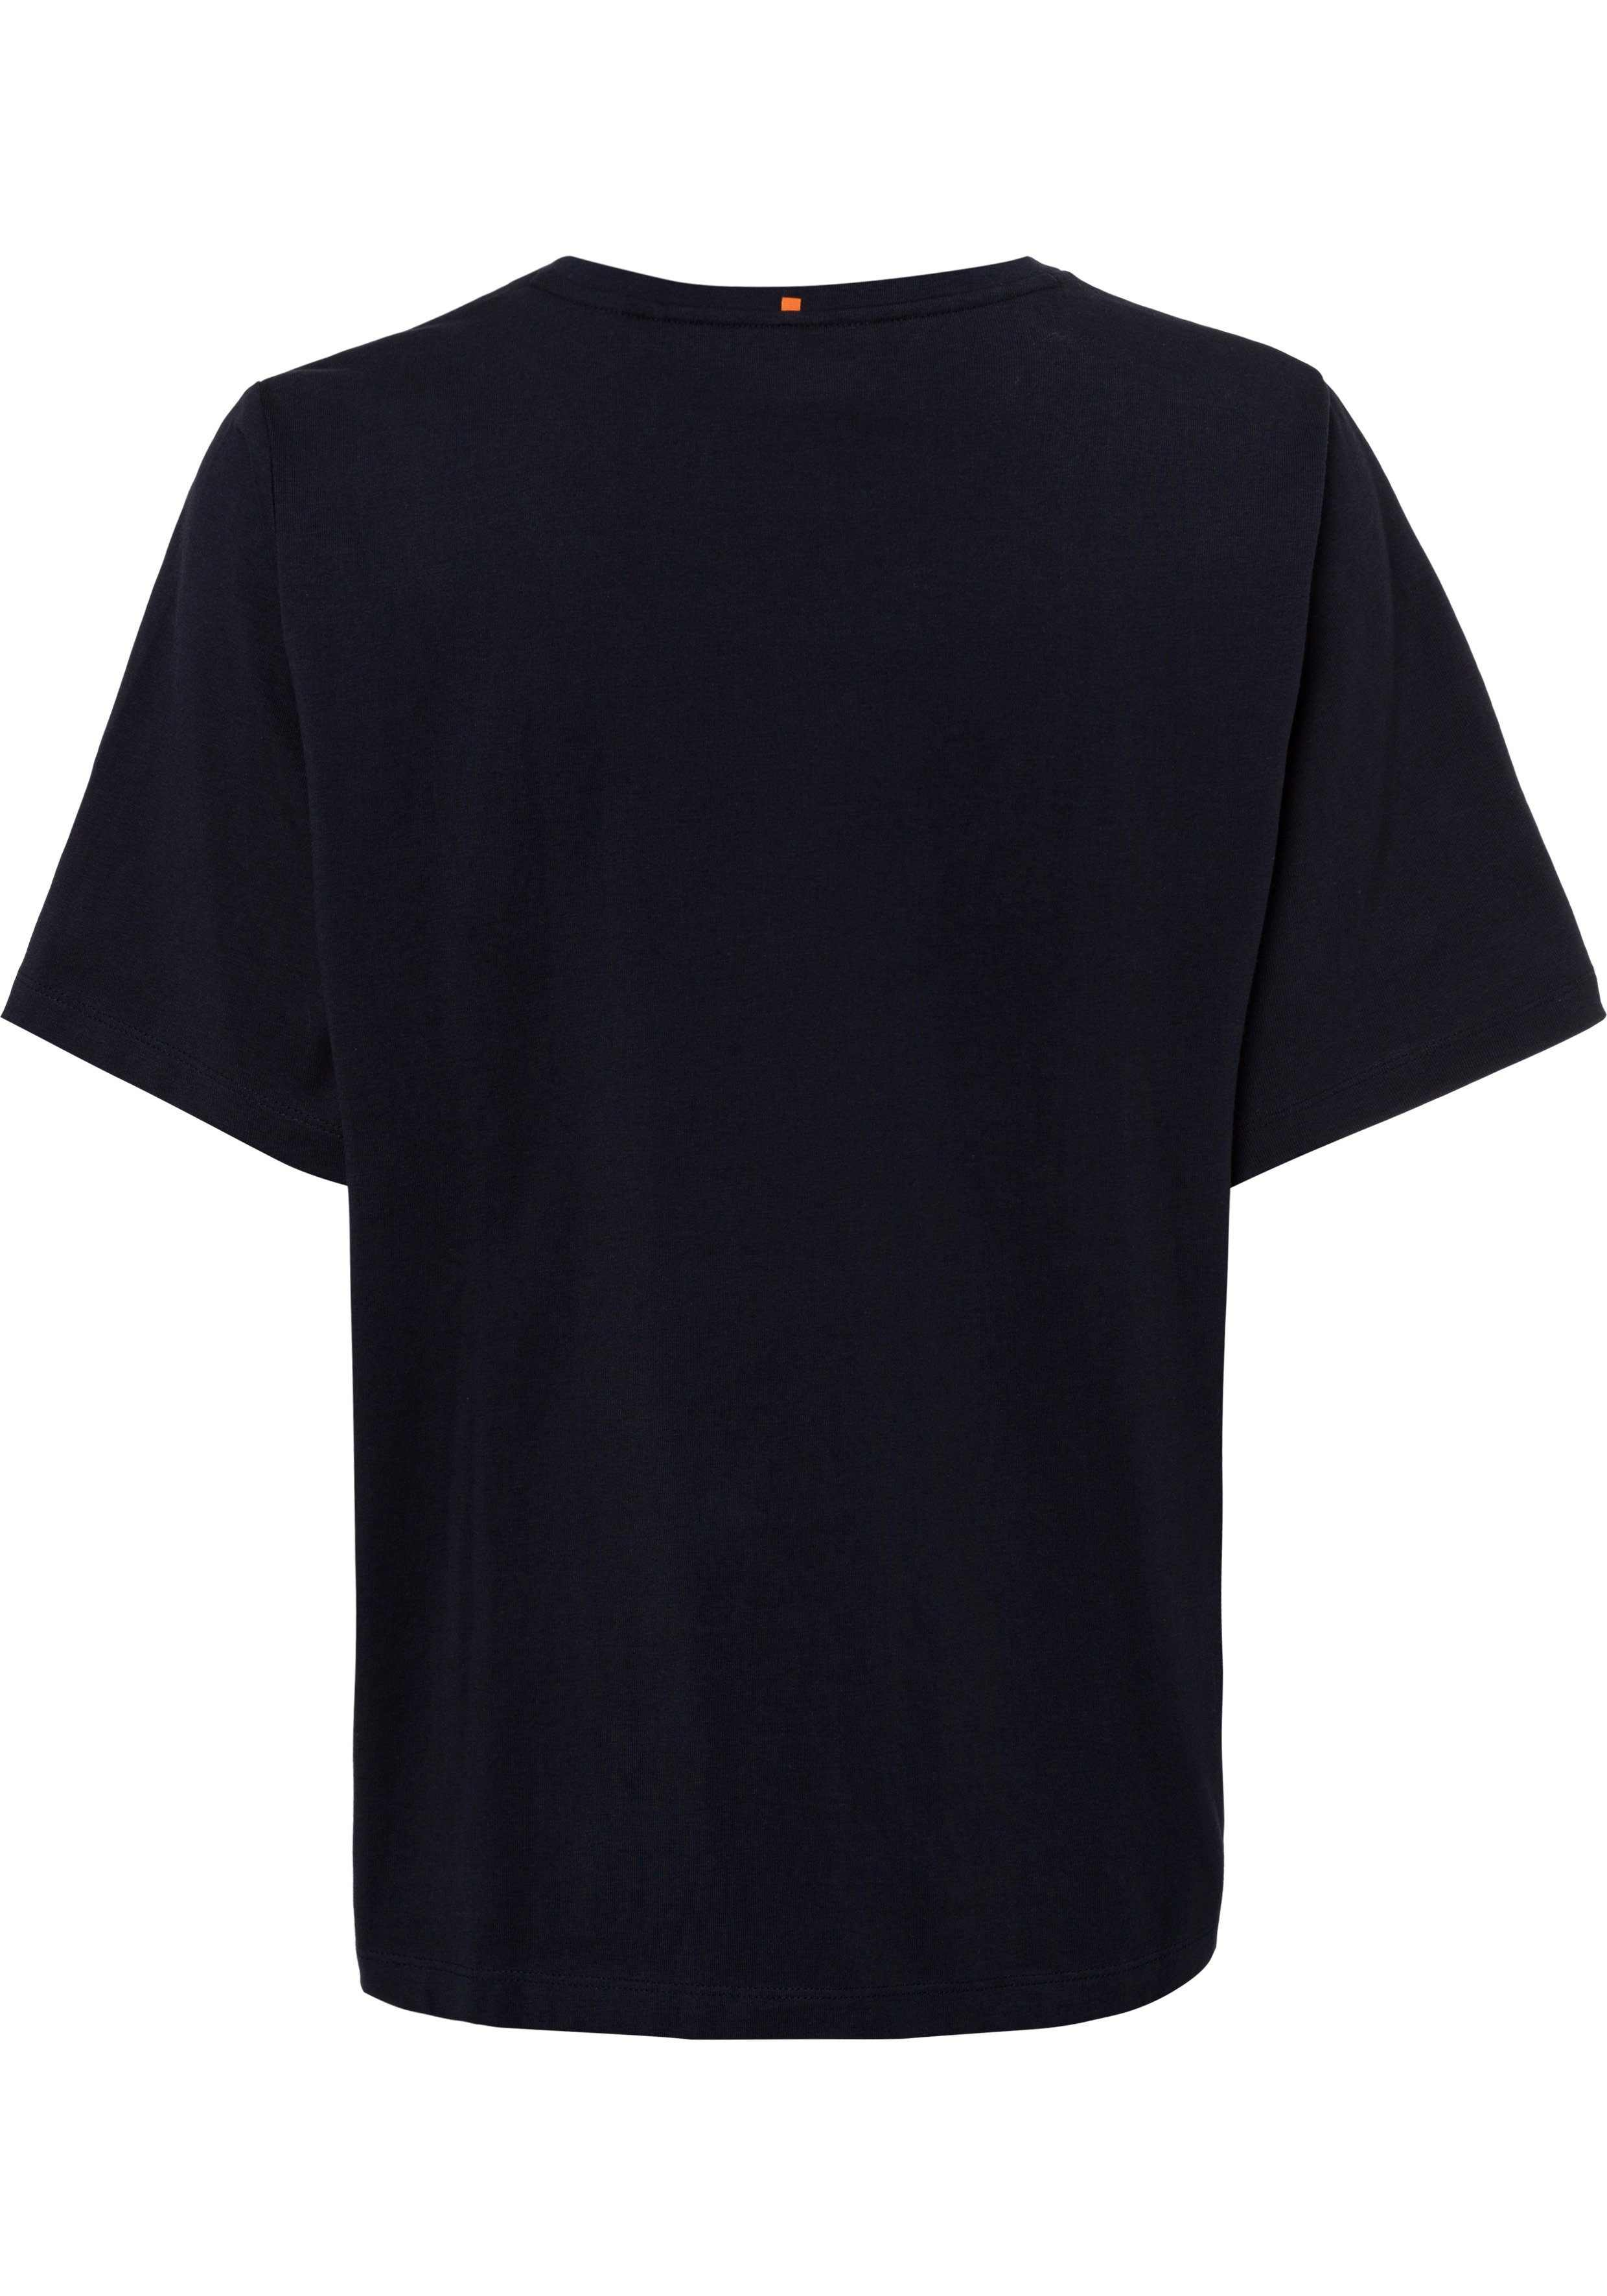 BOSS ORANGE T-Shirt mit BOSS-Kontrastband Ausschnitt navy innen am